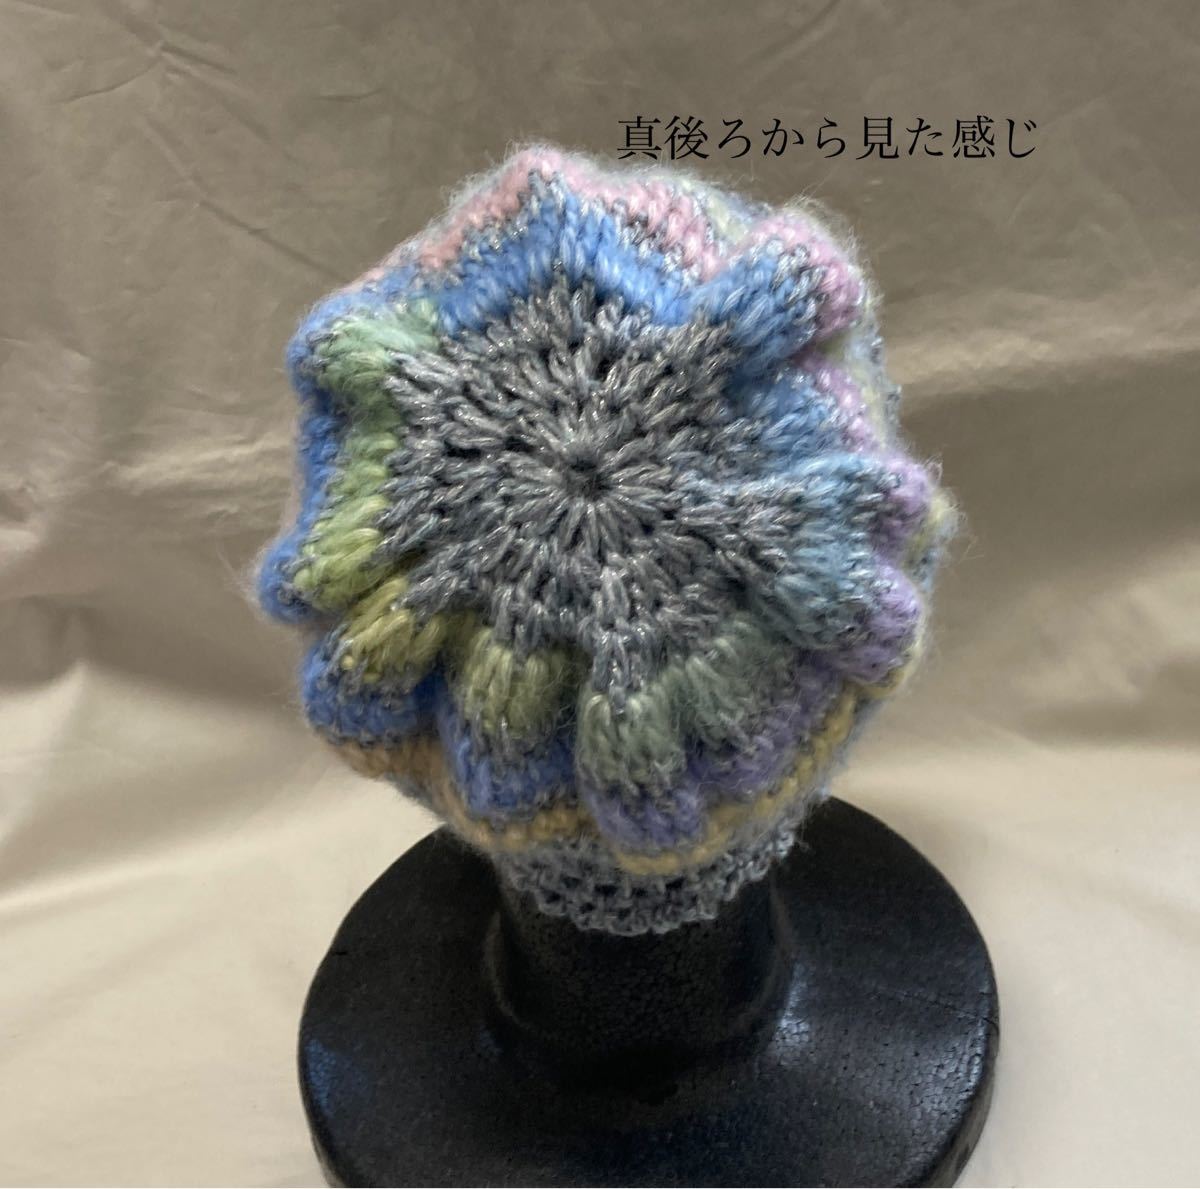 激安価格の 淡い色合いの素敵な手編み帽子 【No.1 】〜お母さんの作った手編み帽子〜 ニットキャップ/ビーニー